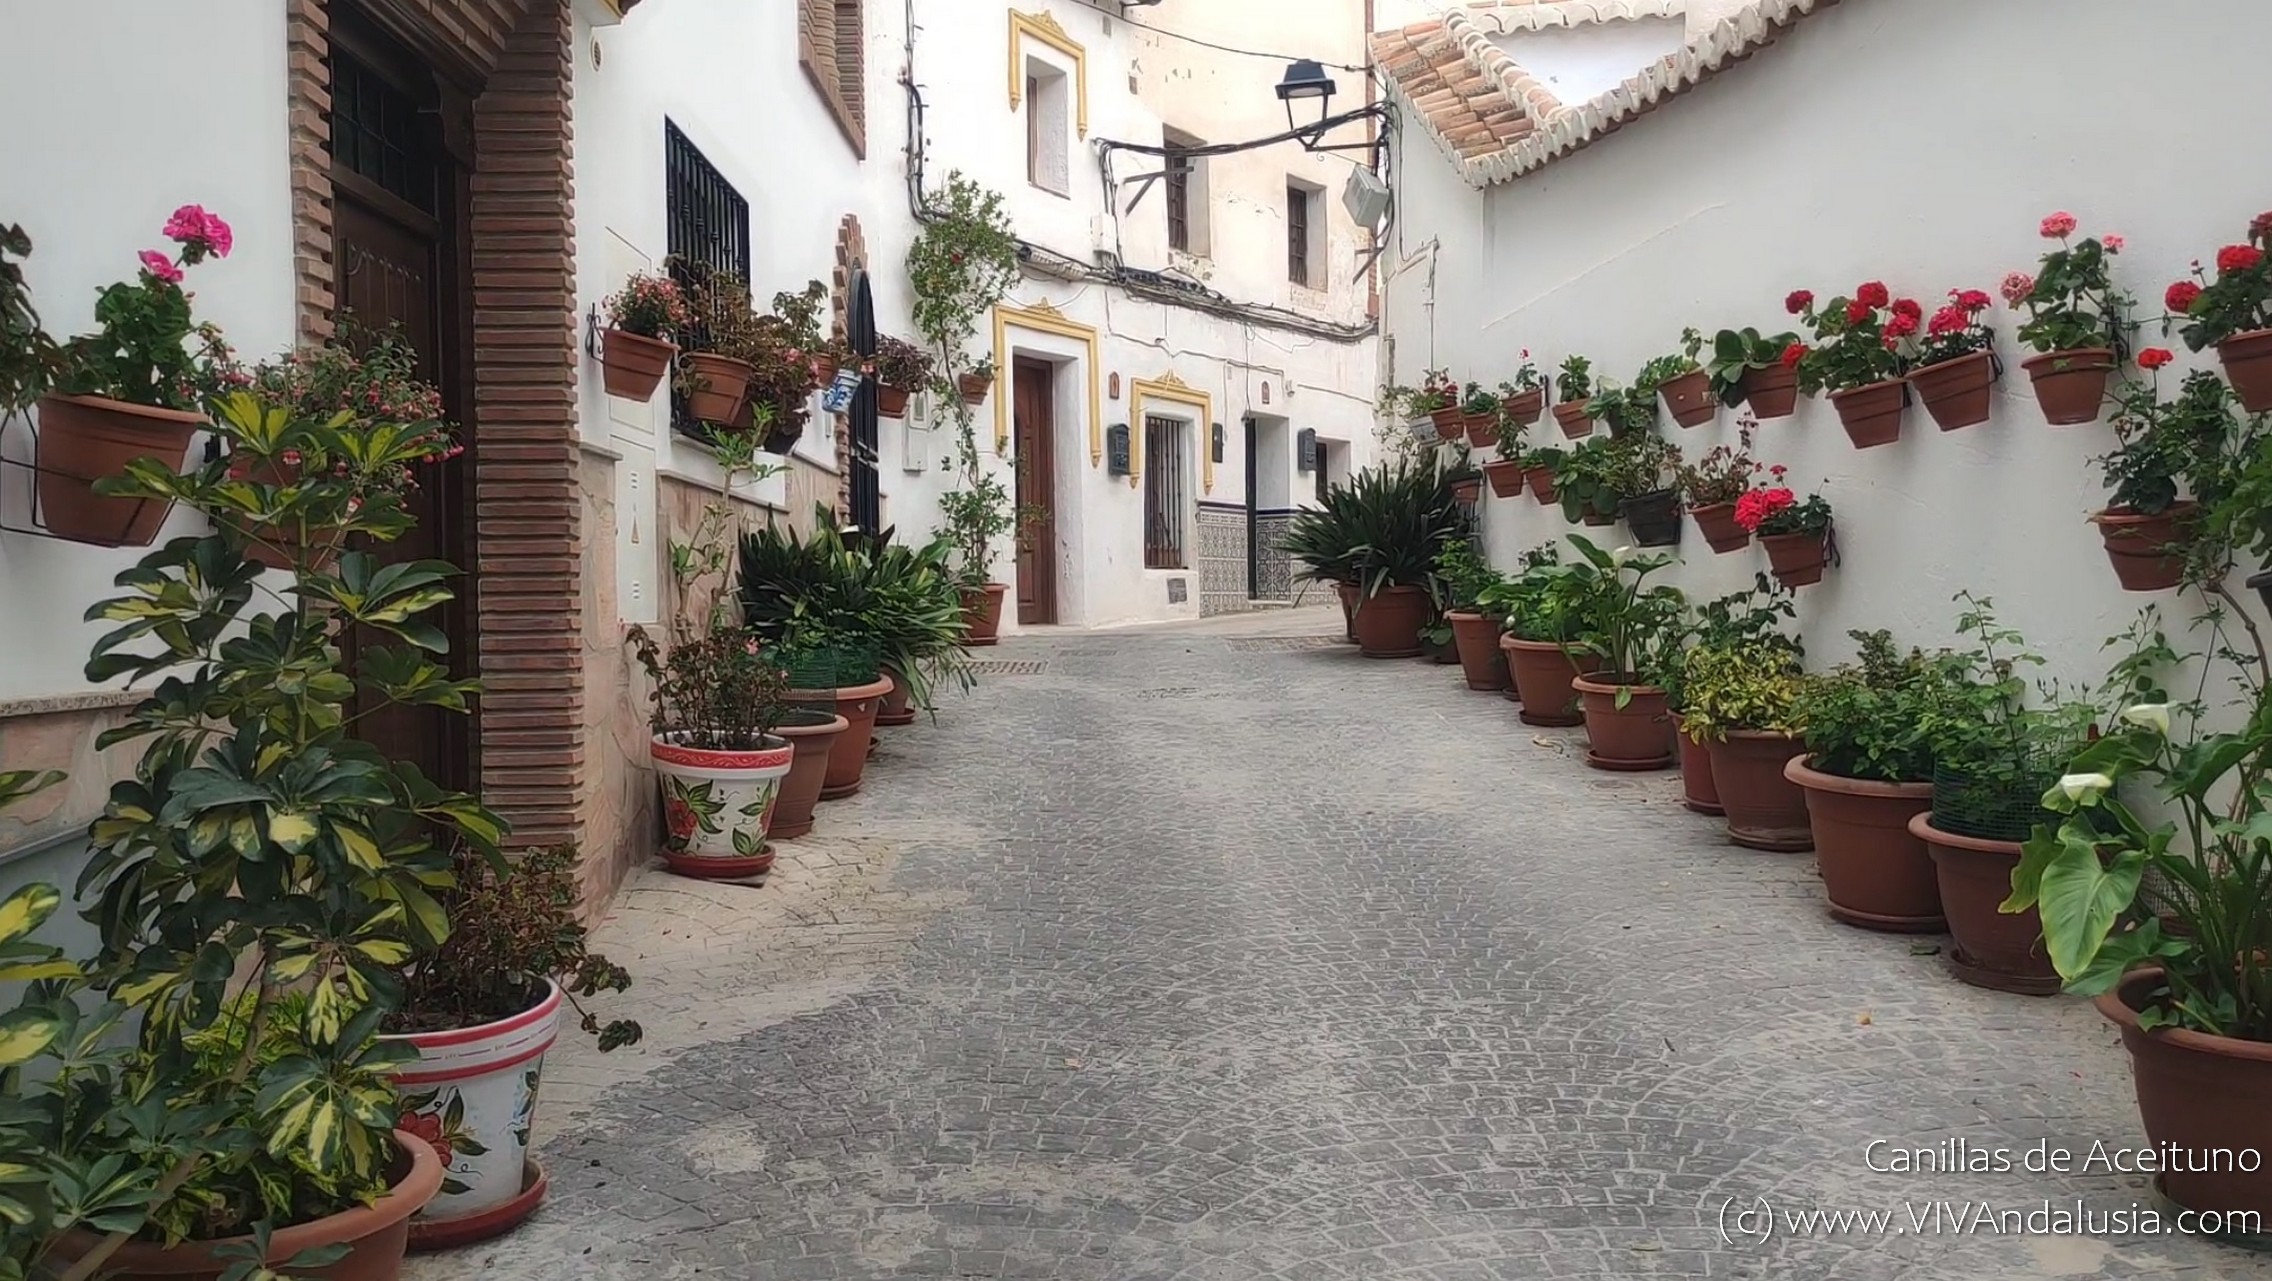 Verken het Betoverende Canillas de Aceituno: Een Juweel in Andalusië